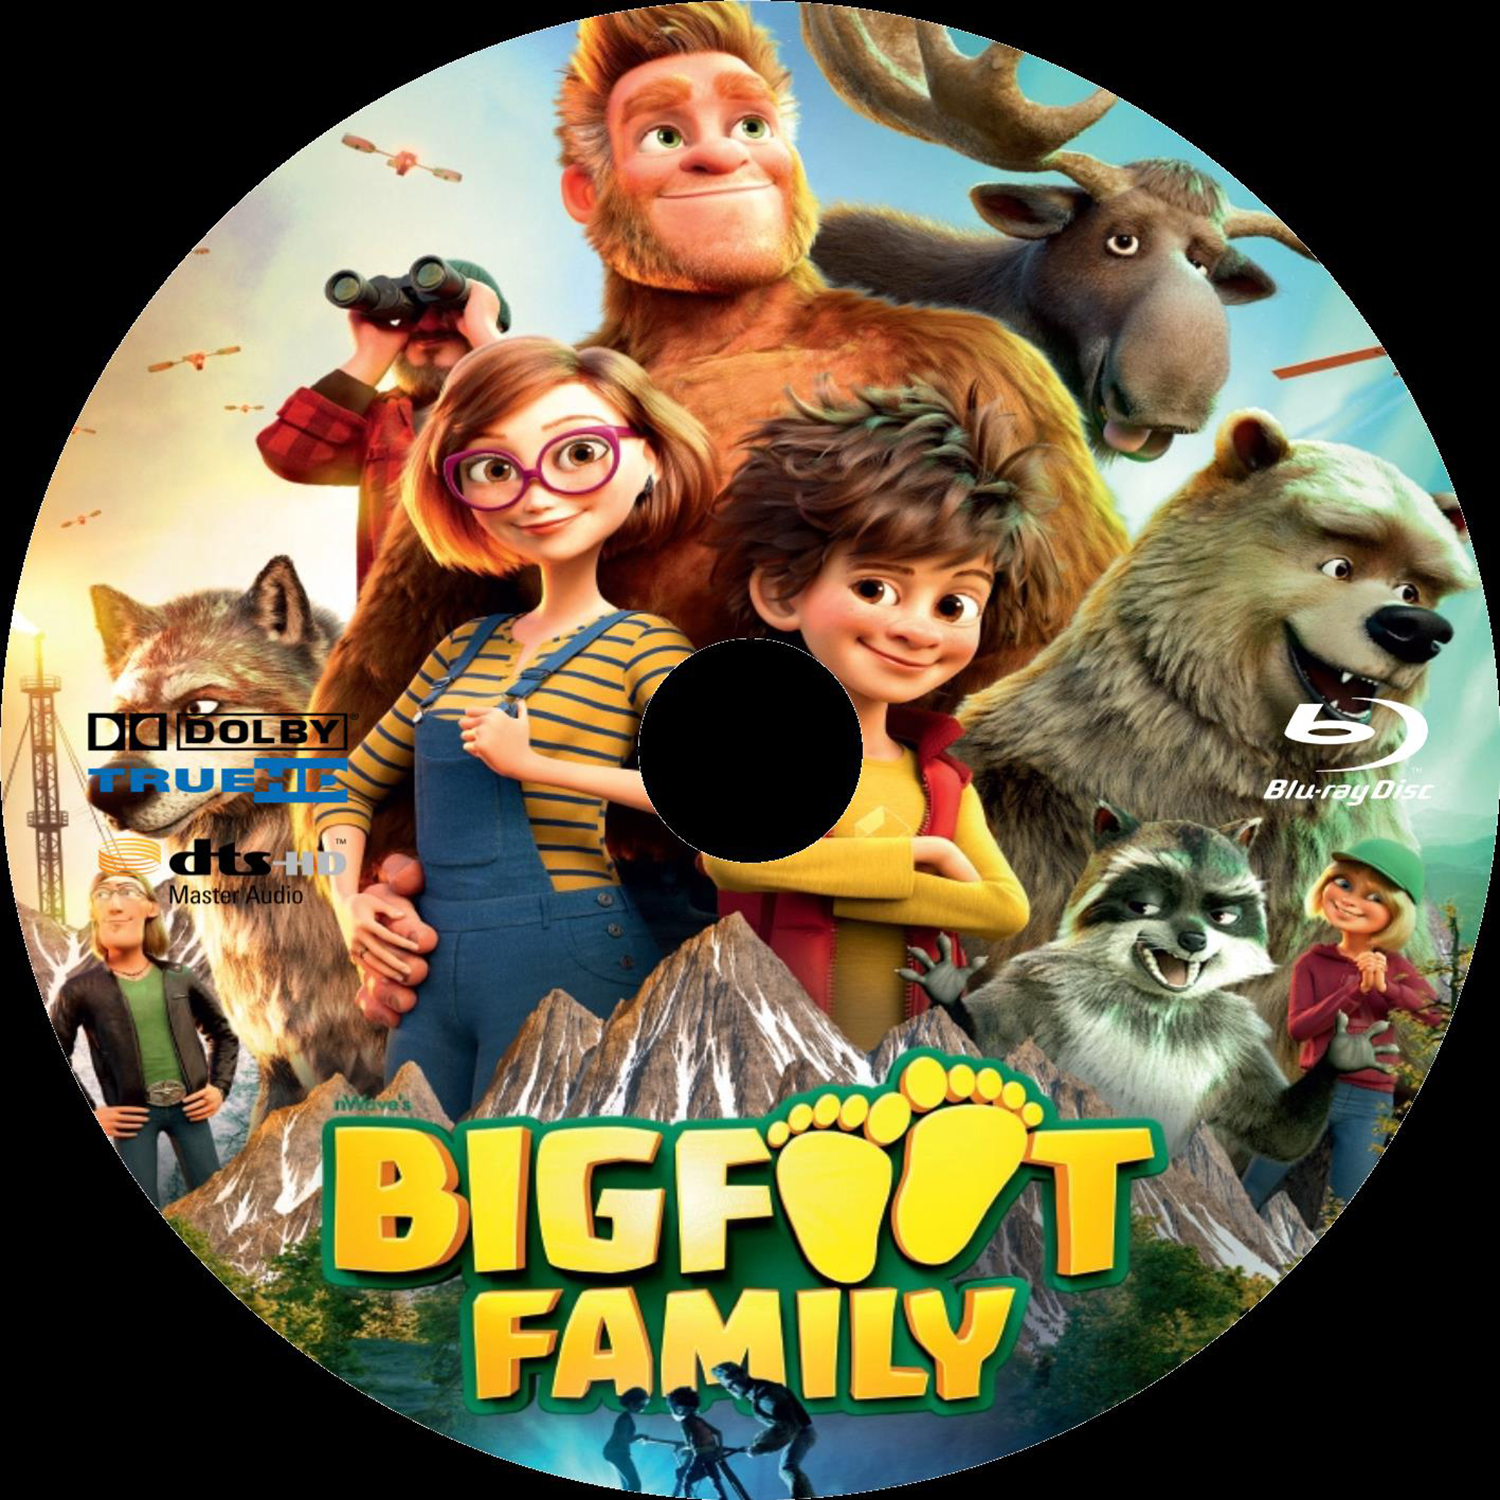 Bigfoot family custom (BLU-RAY)